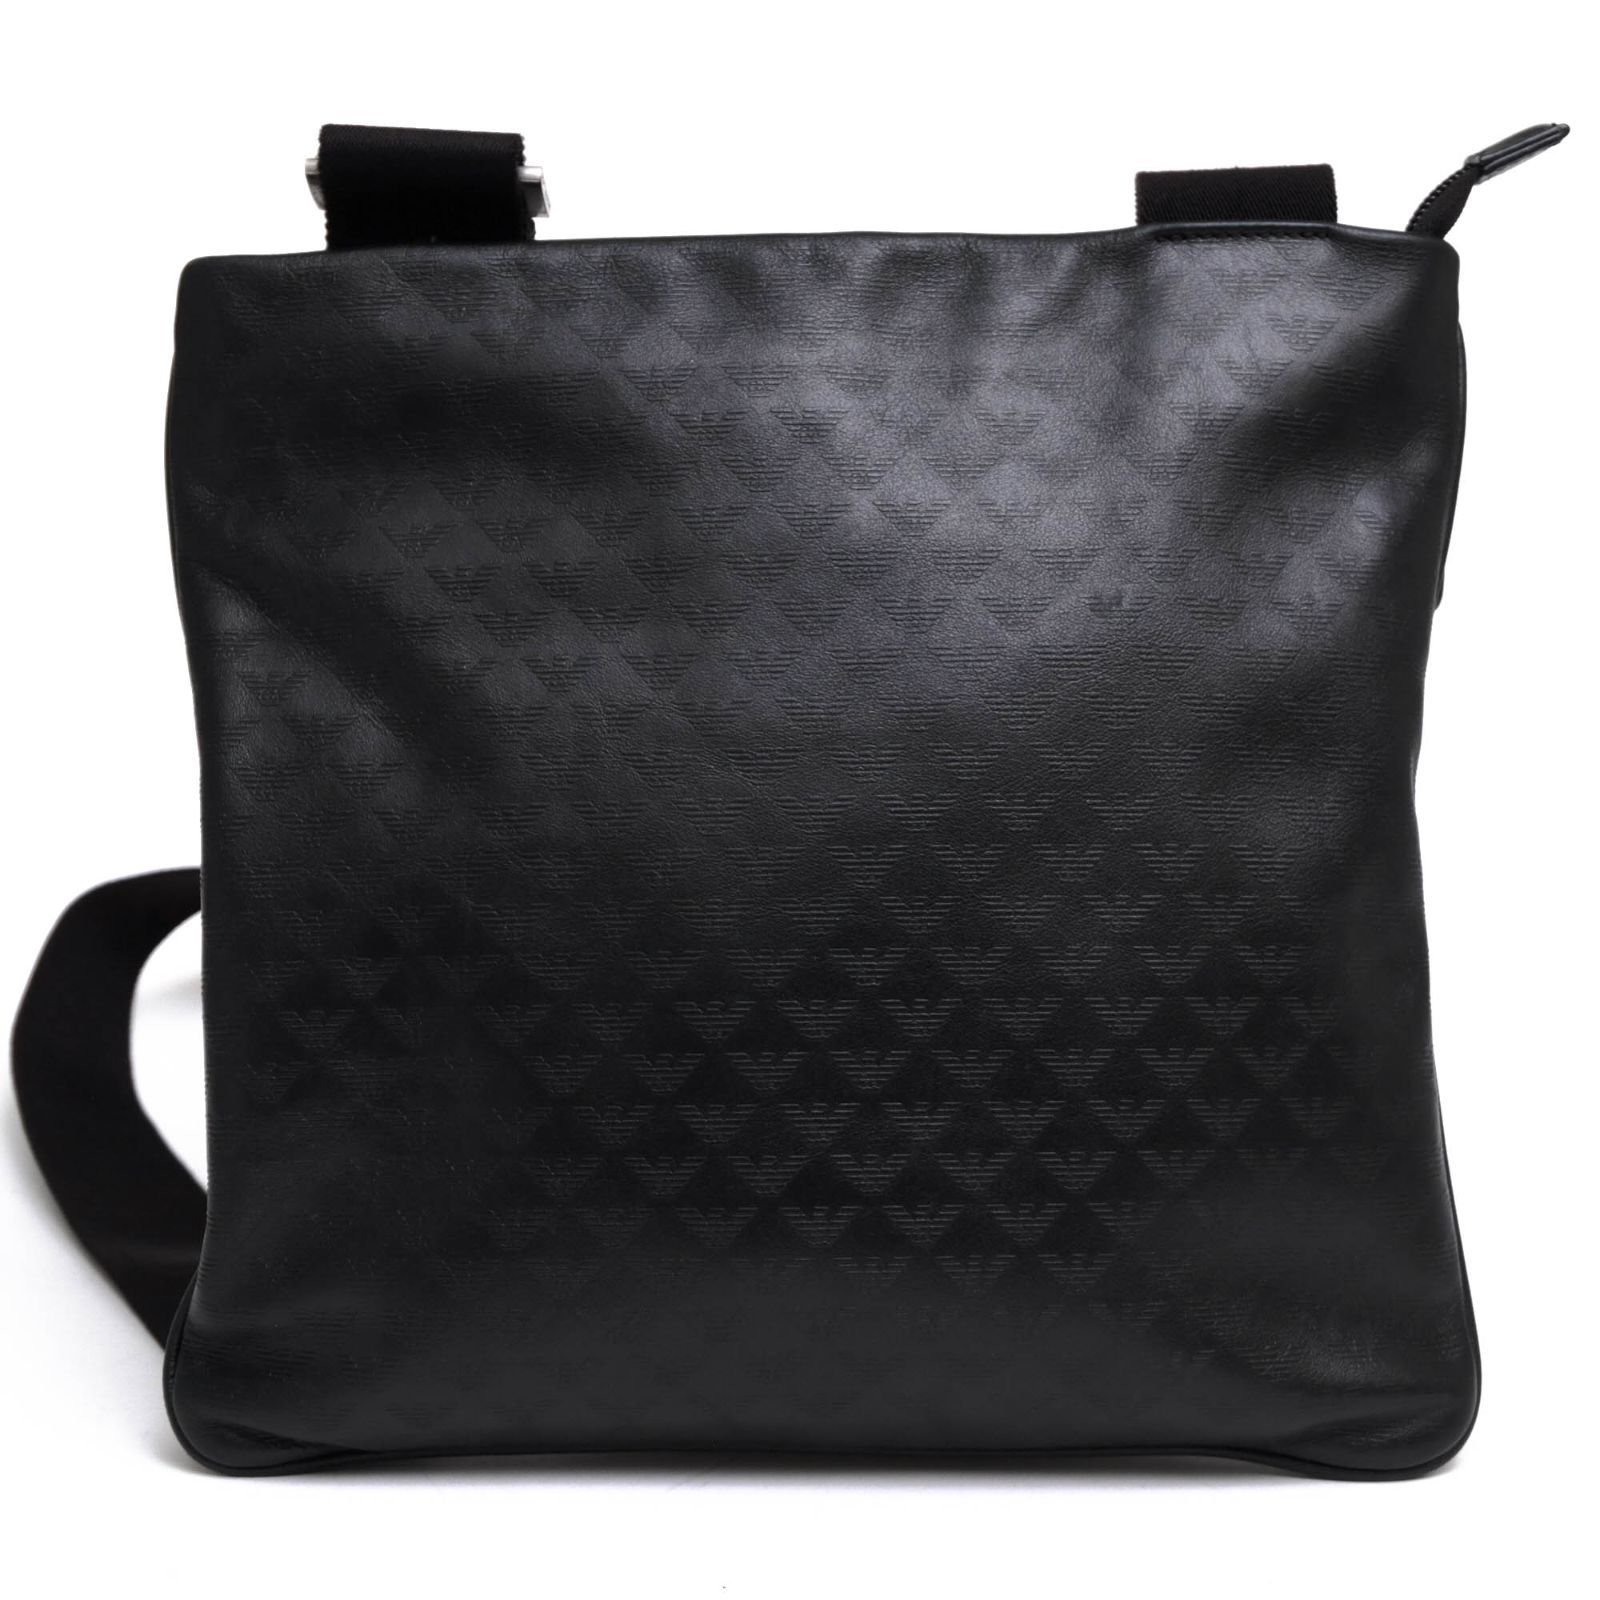 アルマーニ／EMPORIO ARMANI バッグ ショルダーバッグ 鞄 メンズ 男性 男性用レザー 革 本革 ブラック 黒  YC043 YEMF24 イーグル型押し加工 メッセンジャーバッグ